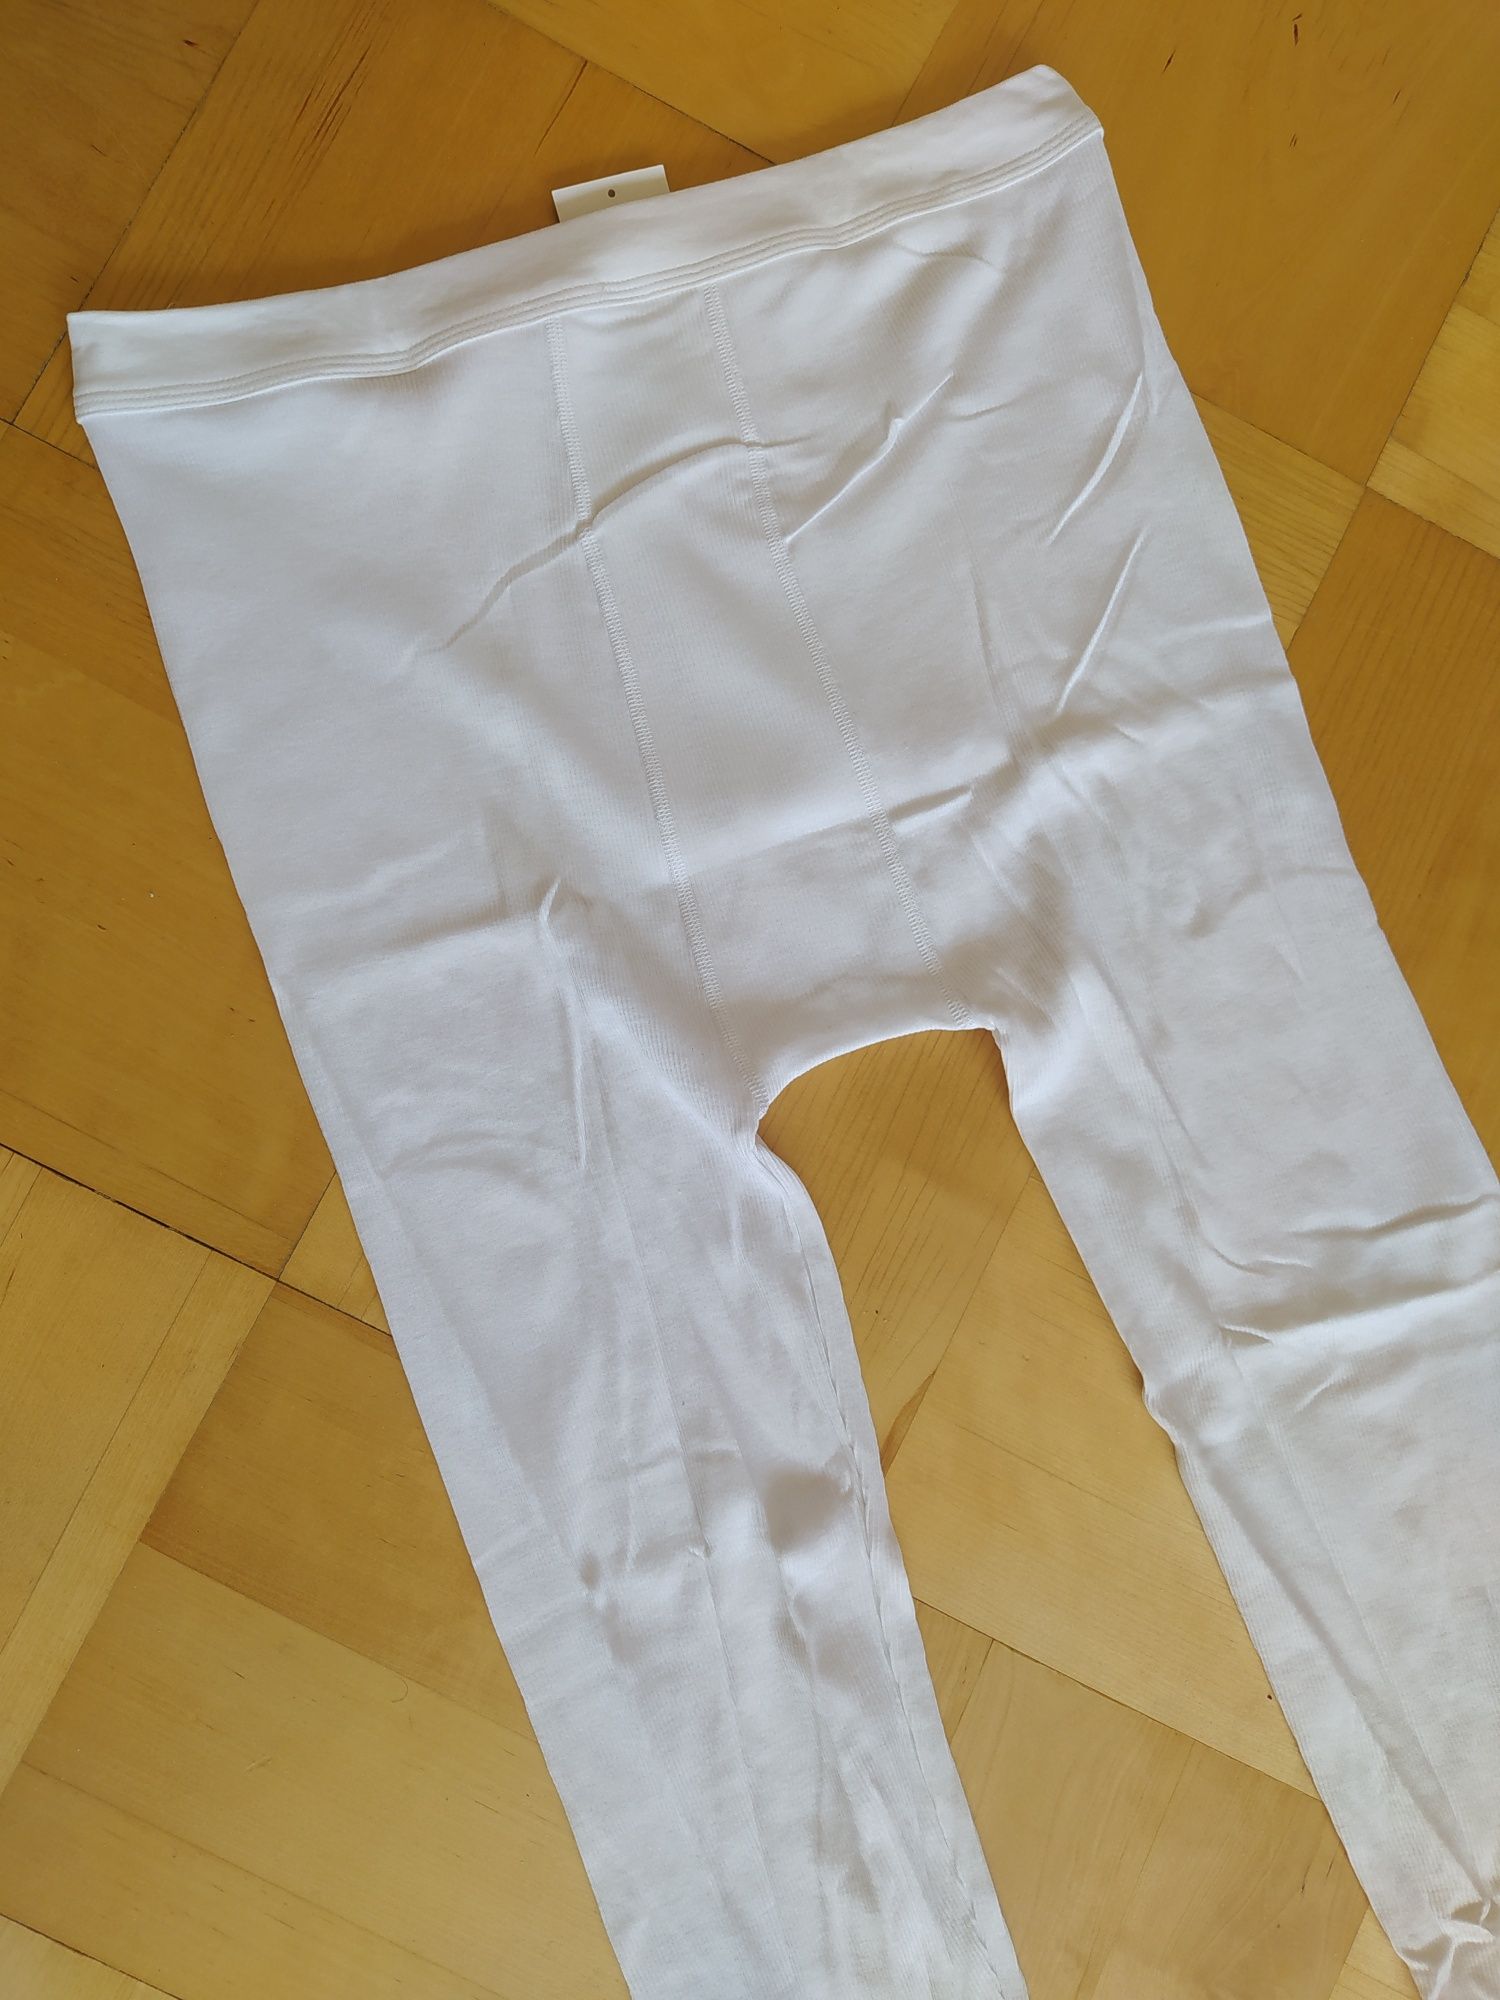 Nowe kalesony XL długie prążkowane białe męskie 100% bawełna